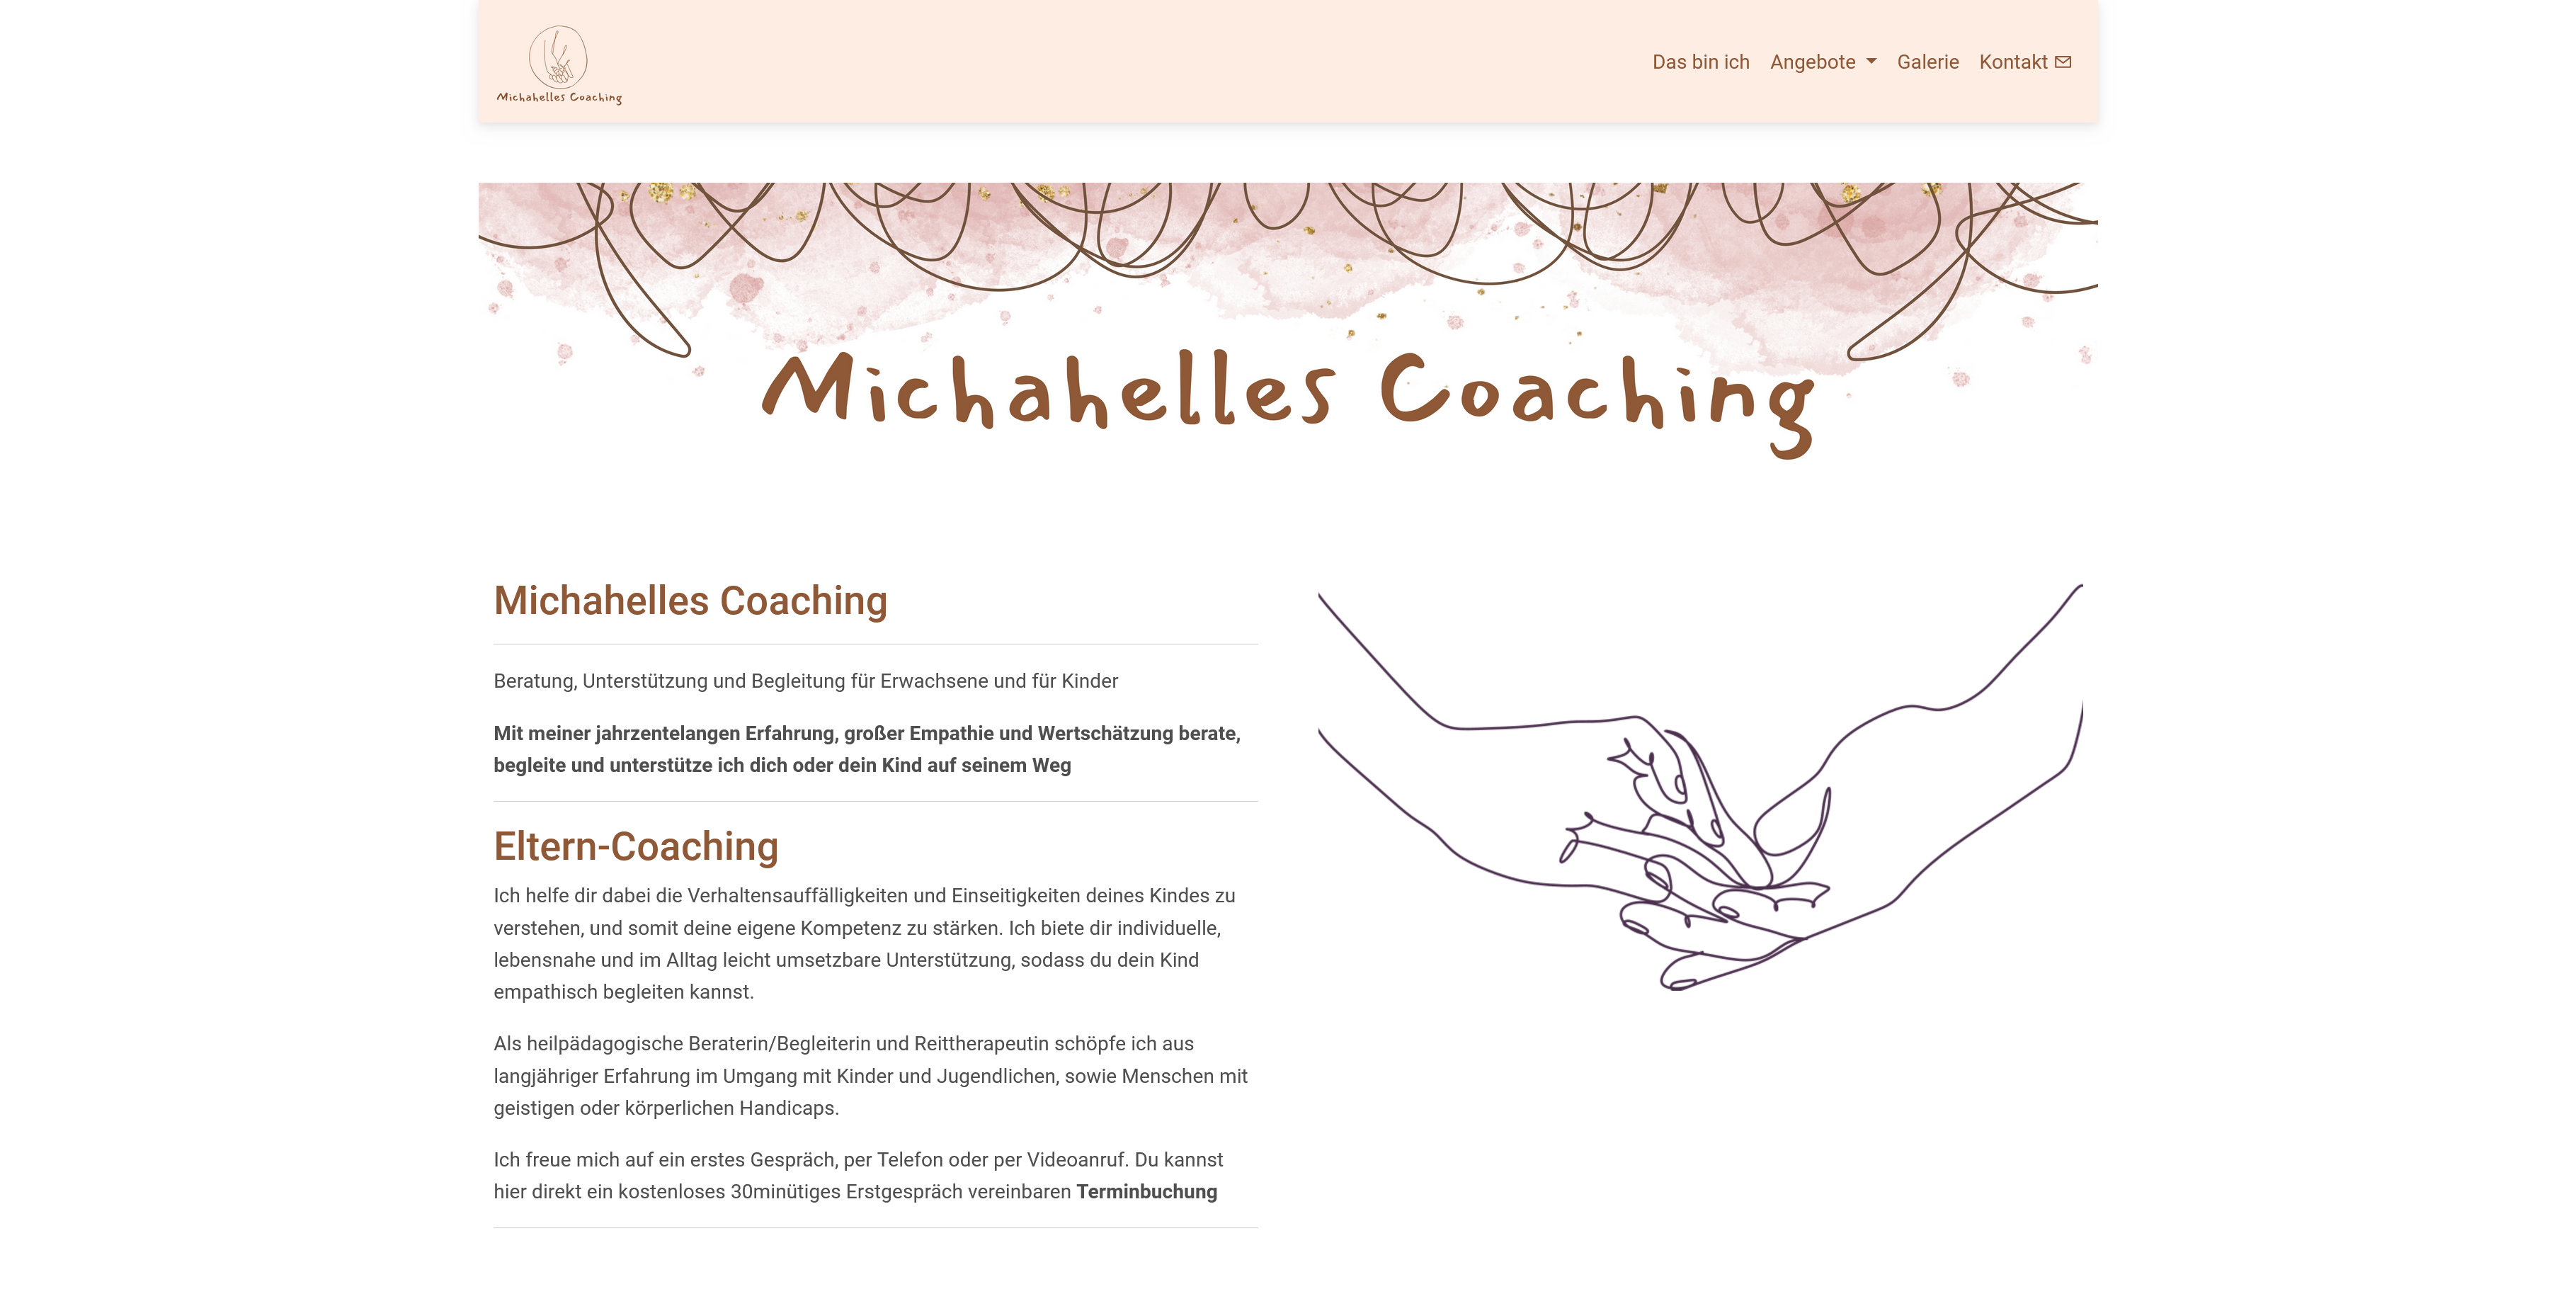 Michahelles Coaching